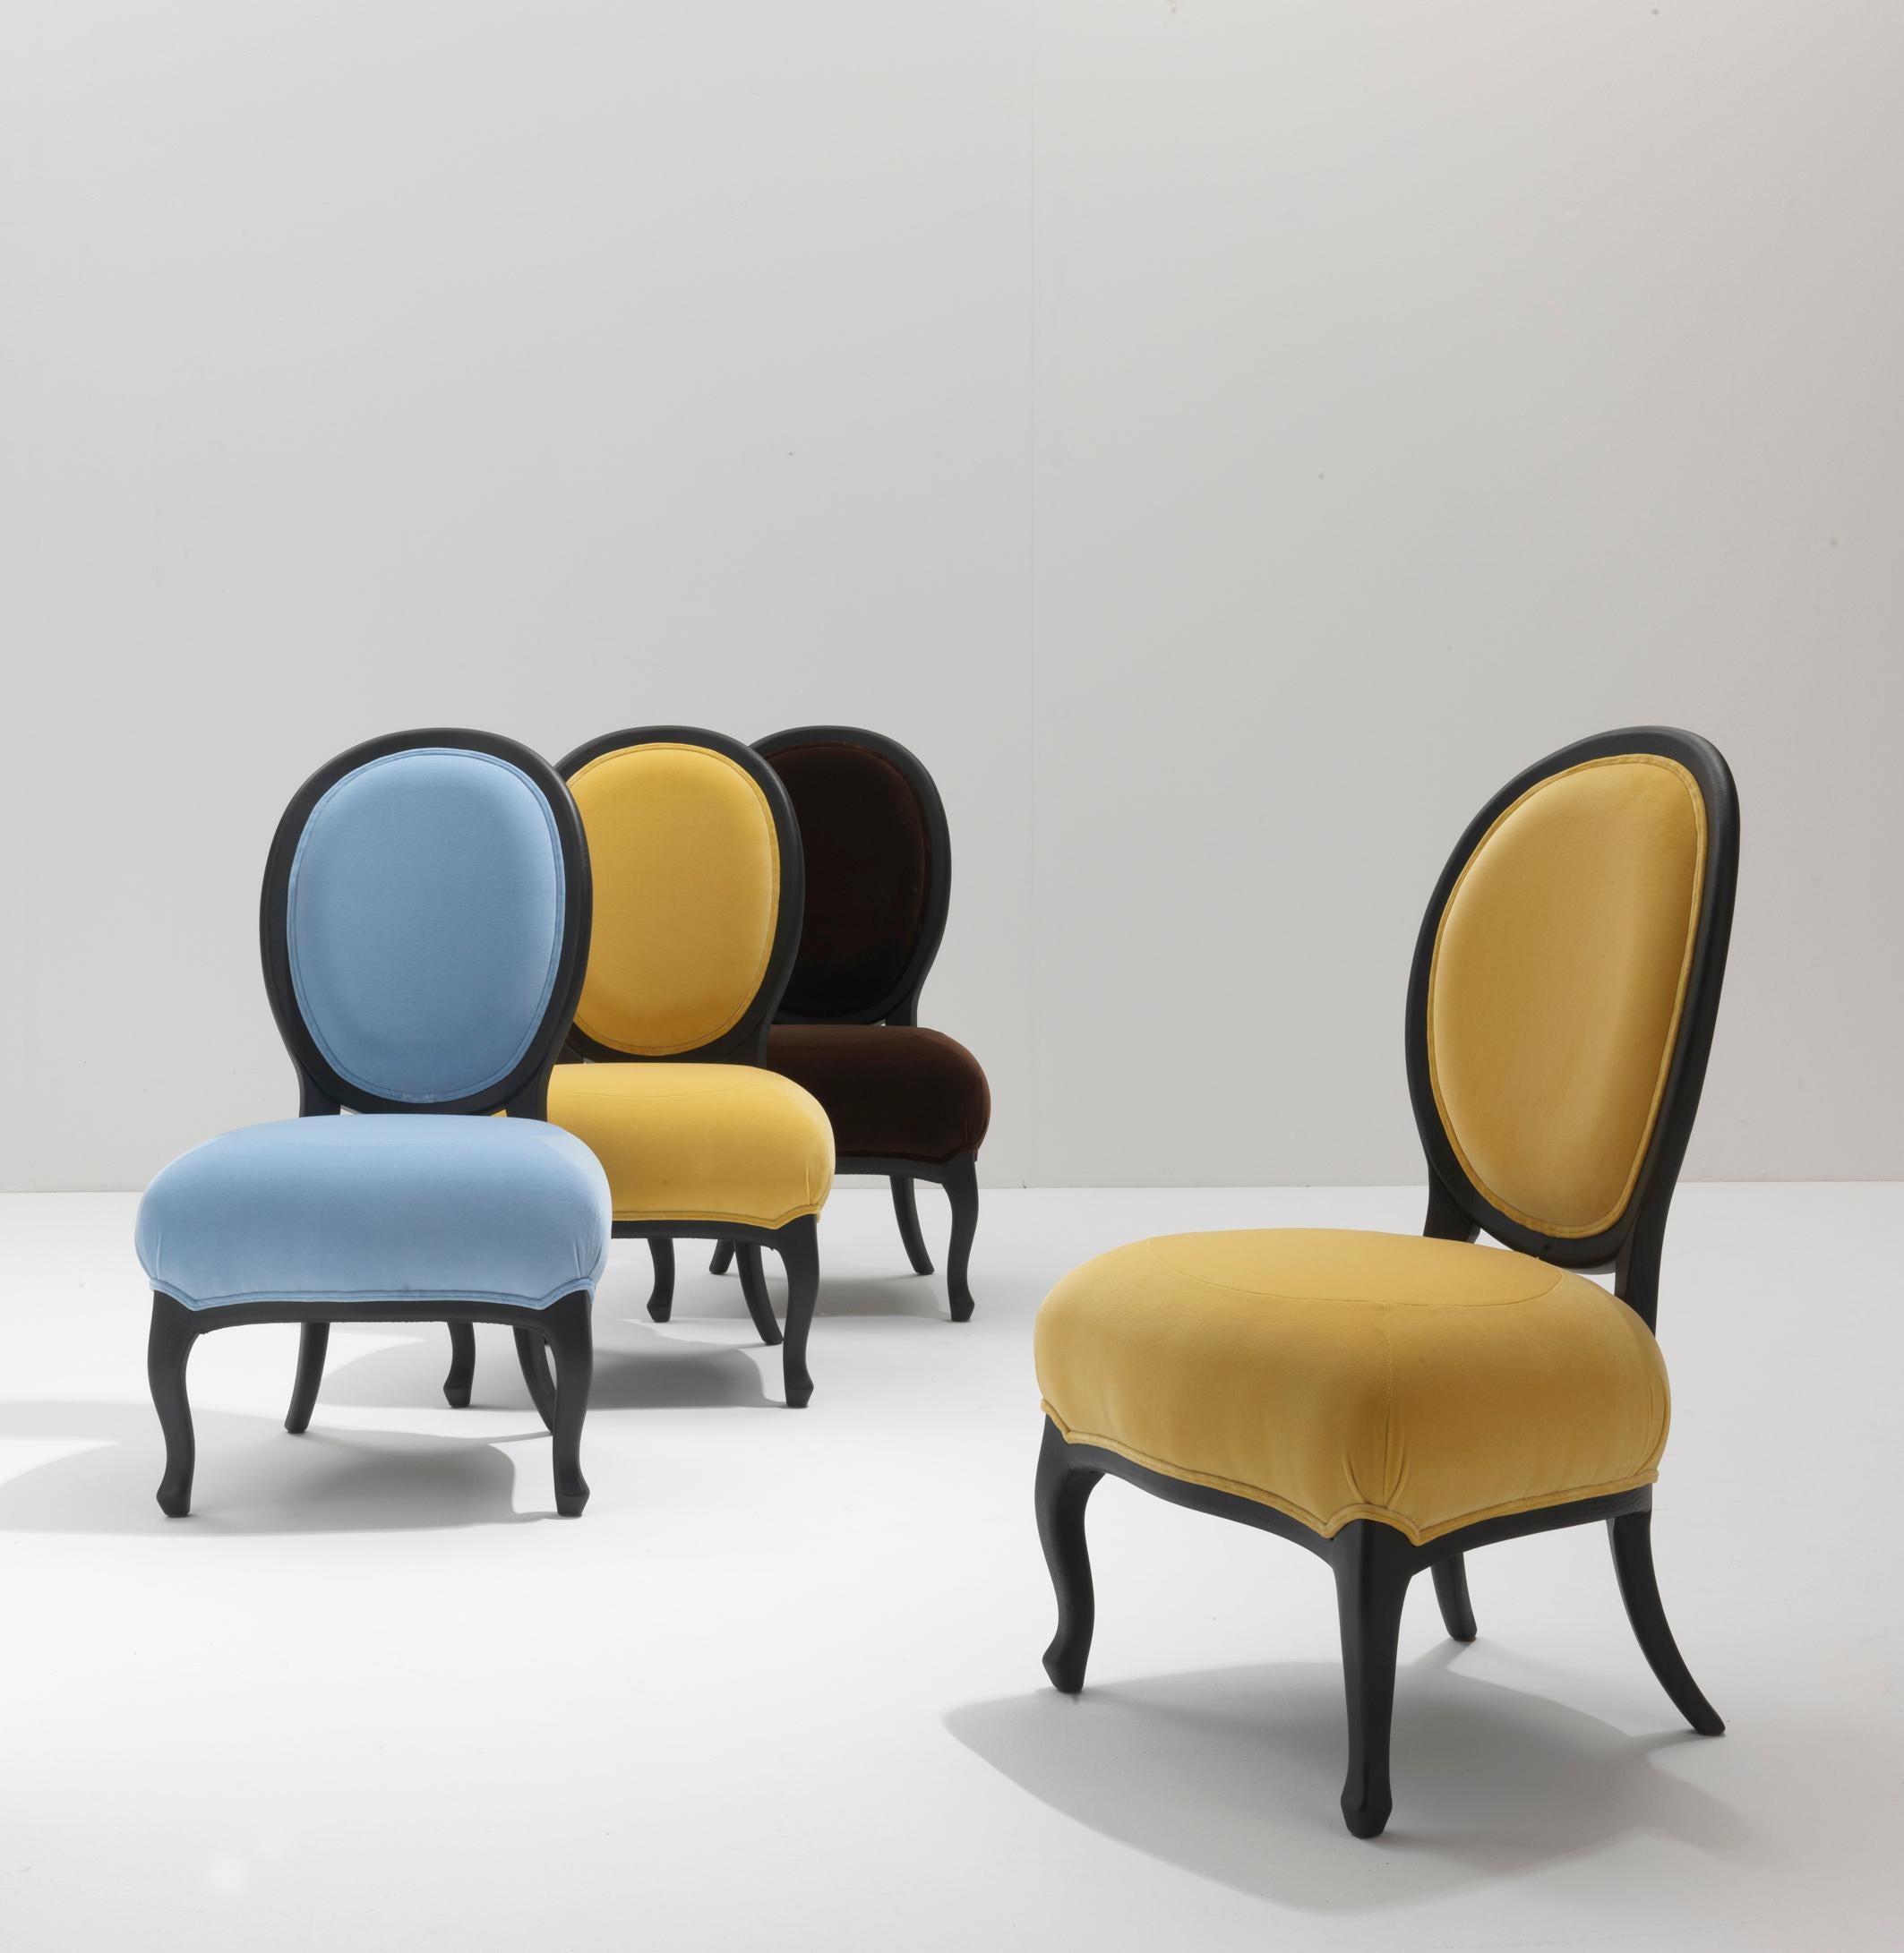 Der perfekte Stuhl für Esstische und Schreibtische ist Rubens, ein von Nigel Coates entworfenes Produkt.

Inspiriert vom klassischen Wohnzimmersessel, wird Rubens dank seiner matten Nussbaumoberfläche und der schillernden Stoffe, die gepolsterten